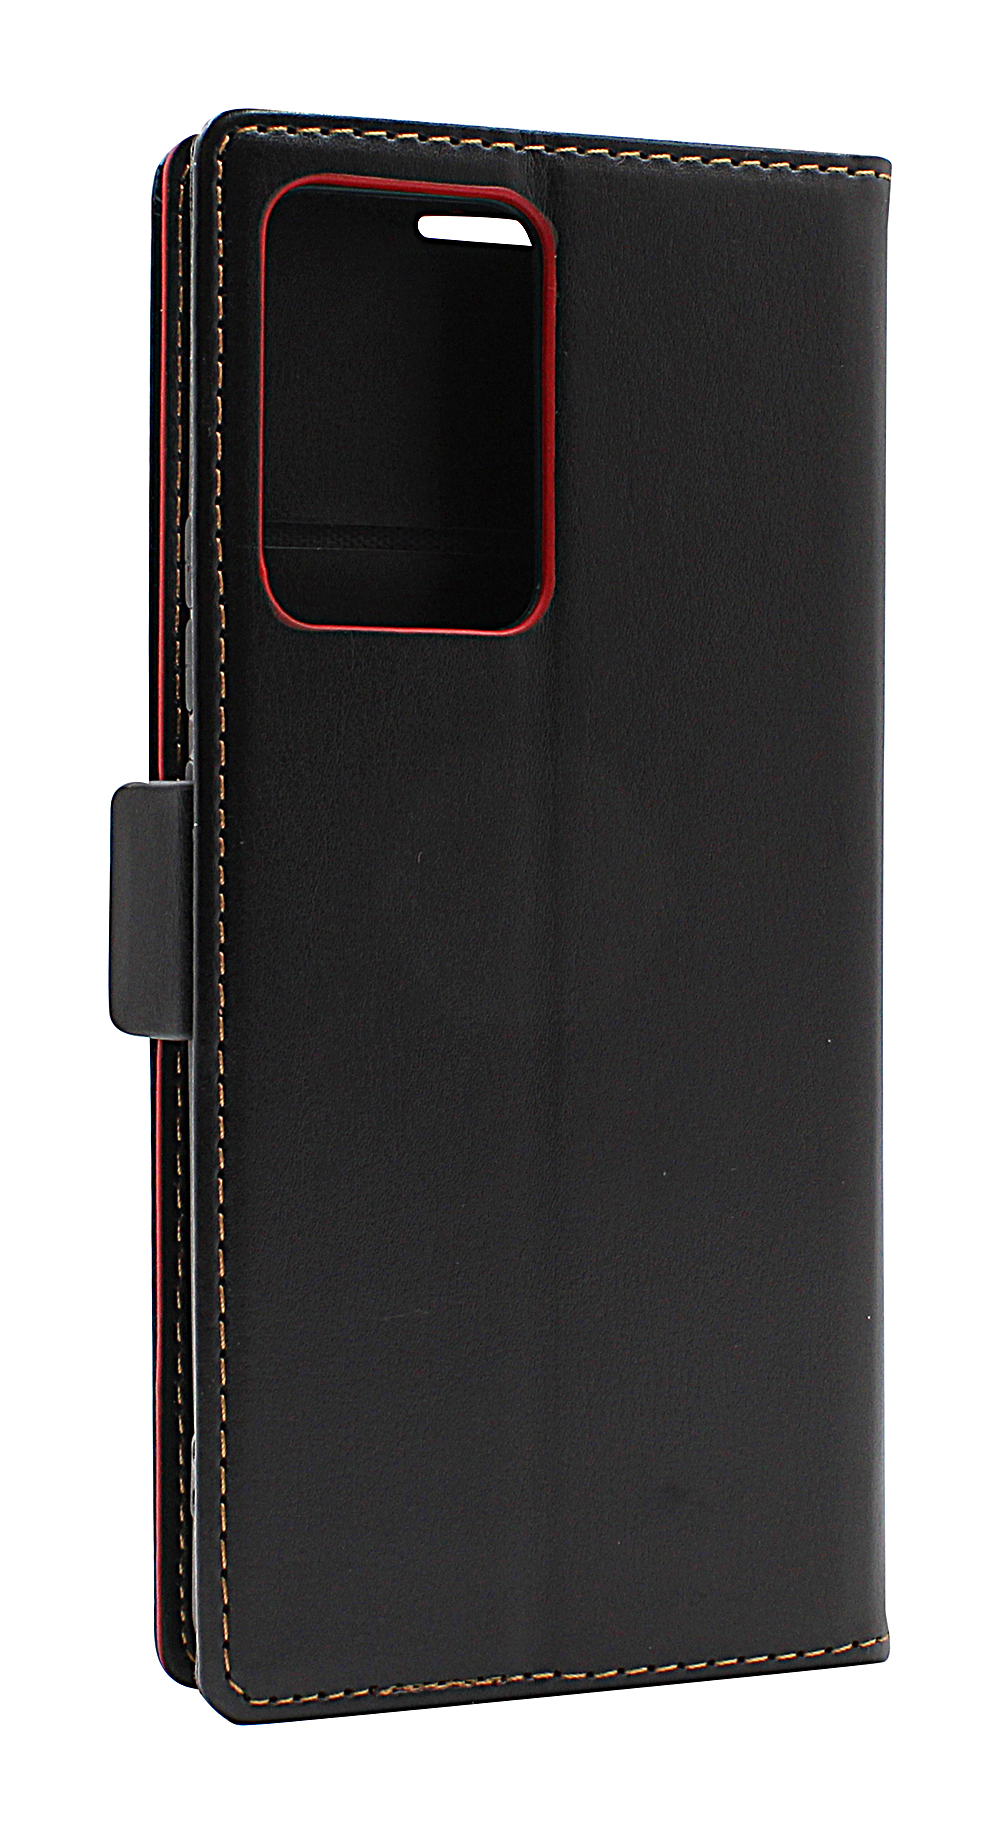 billigamobilskydd.seLyx Standcase Wallet Xiaomi 13 Lite 5G